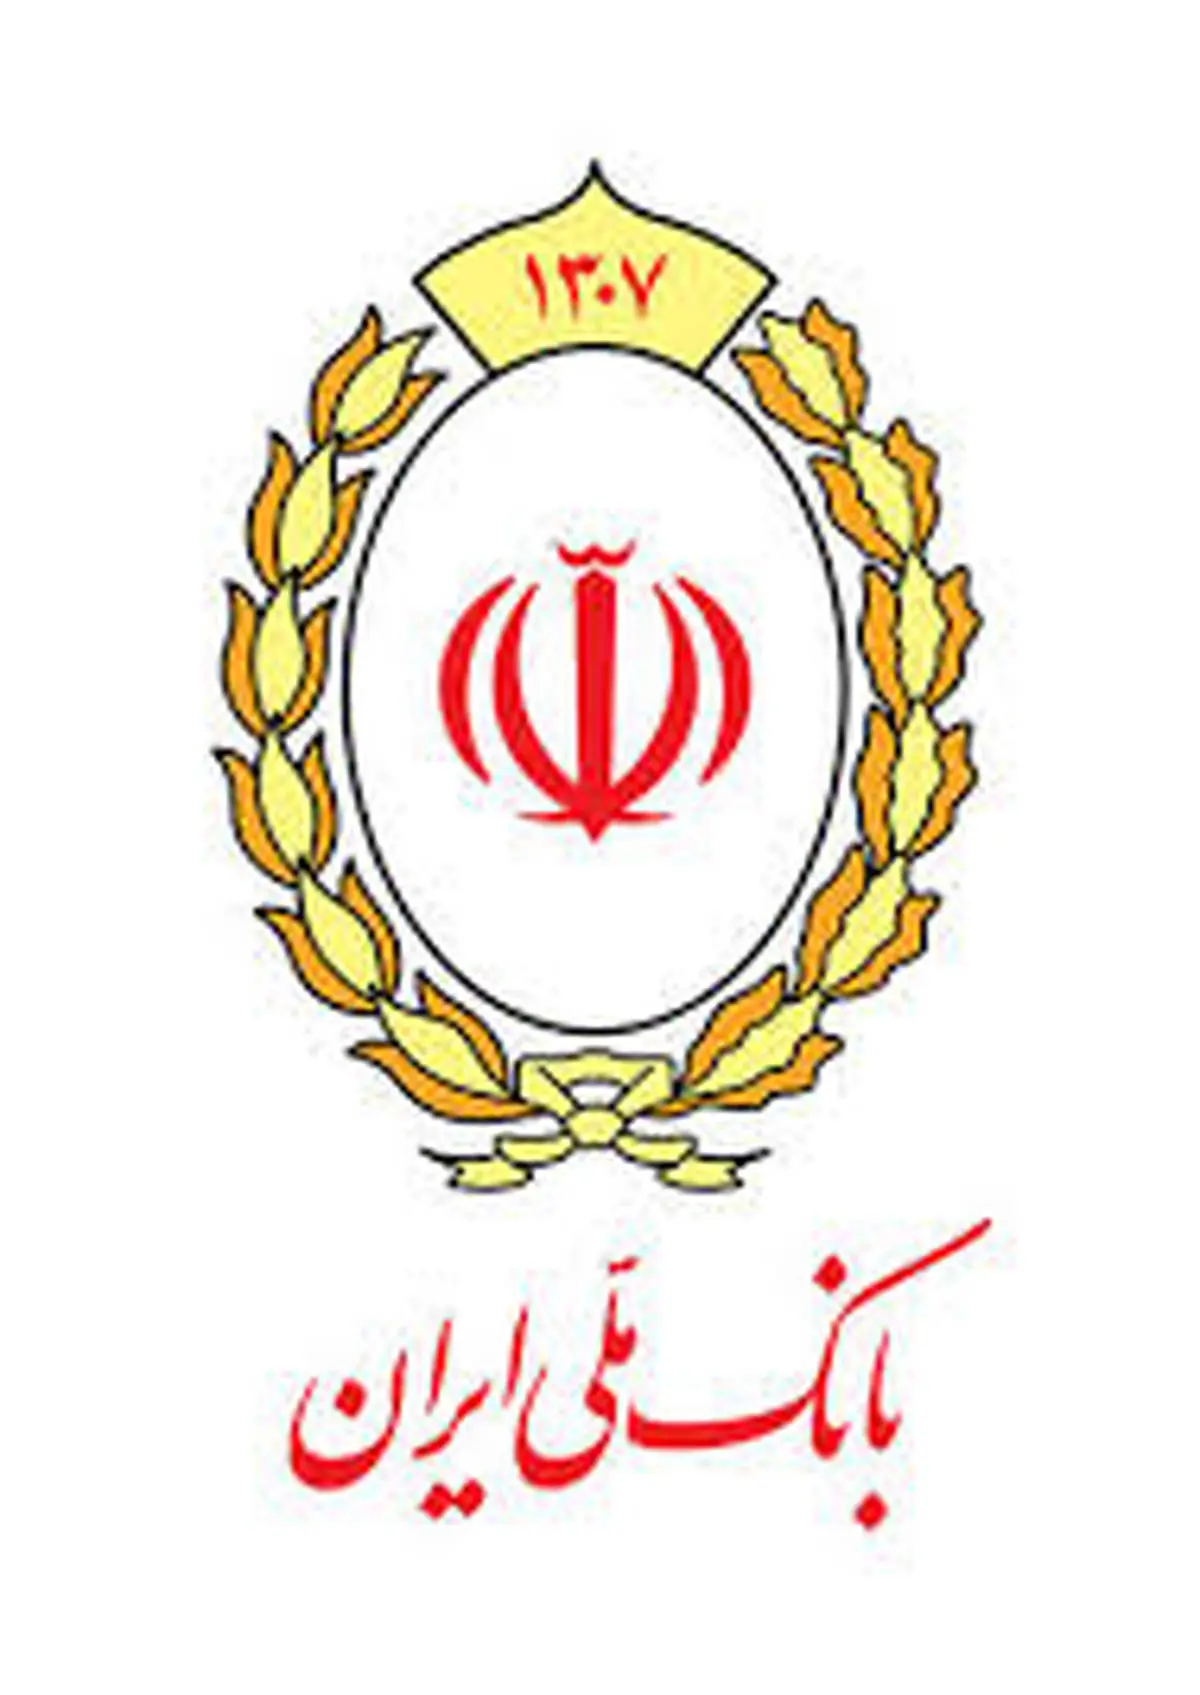 با تسهیلات بانک ملی ایران از کالای ایرانی حمایت کنید

